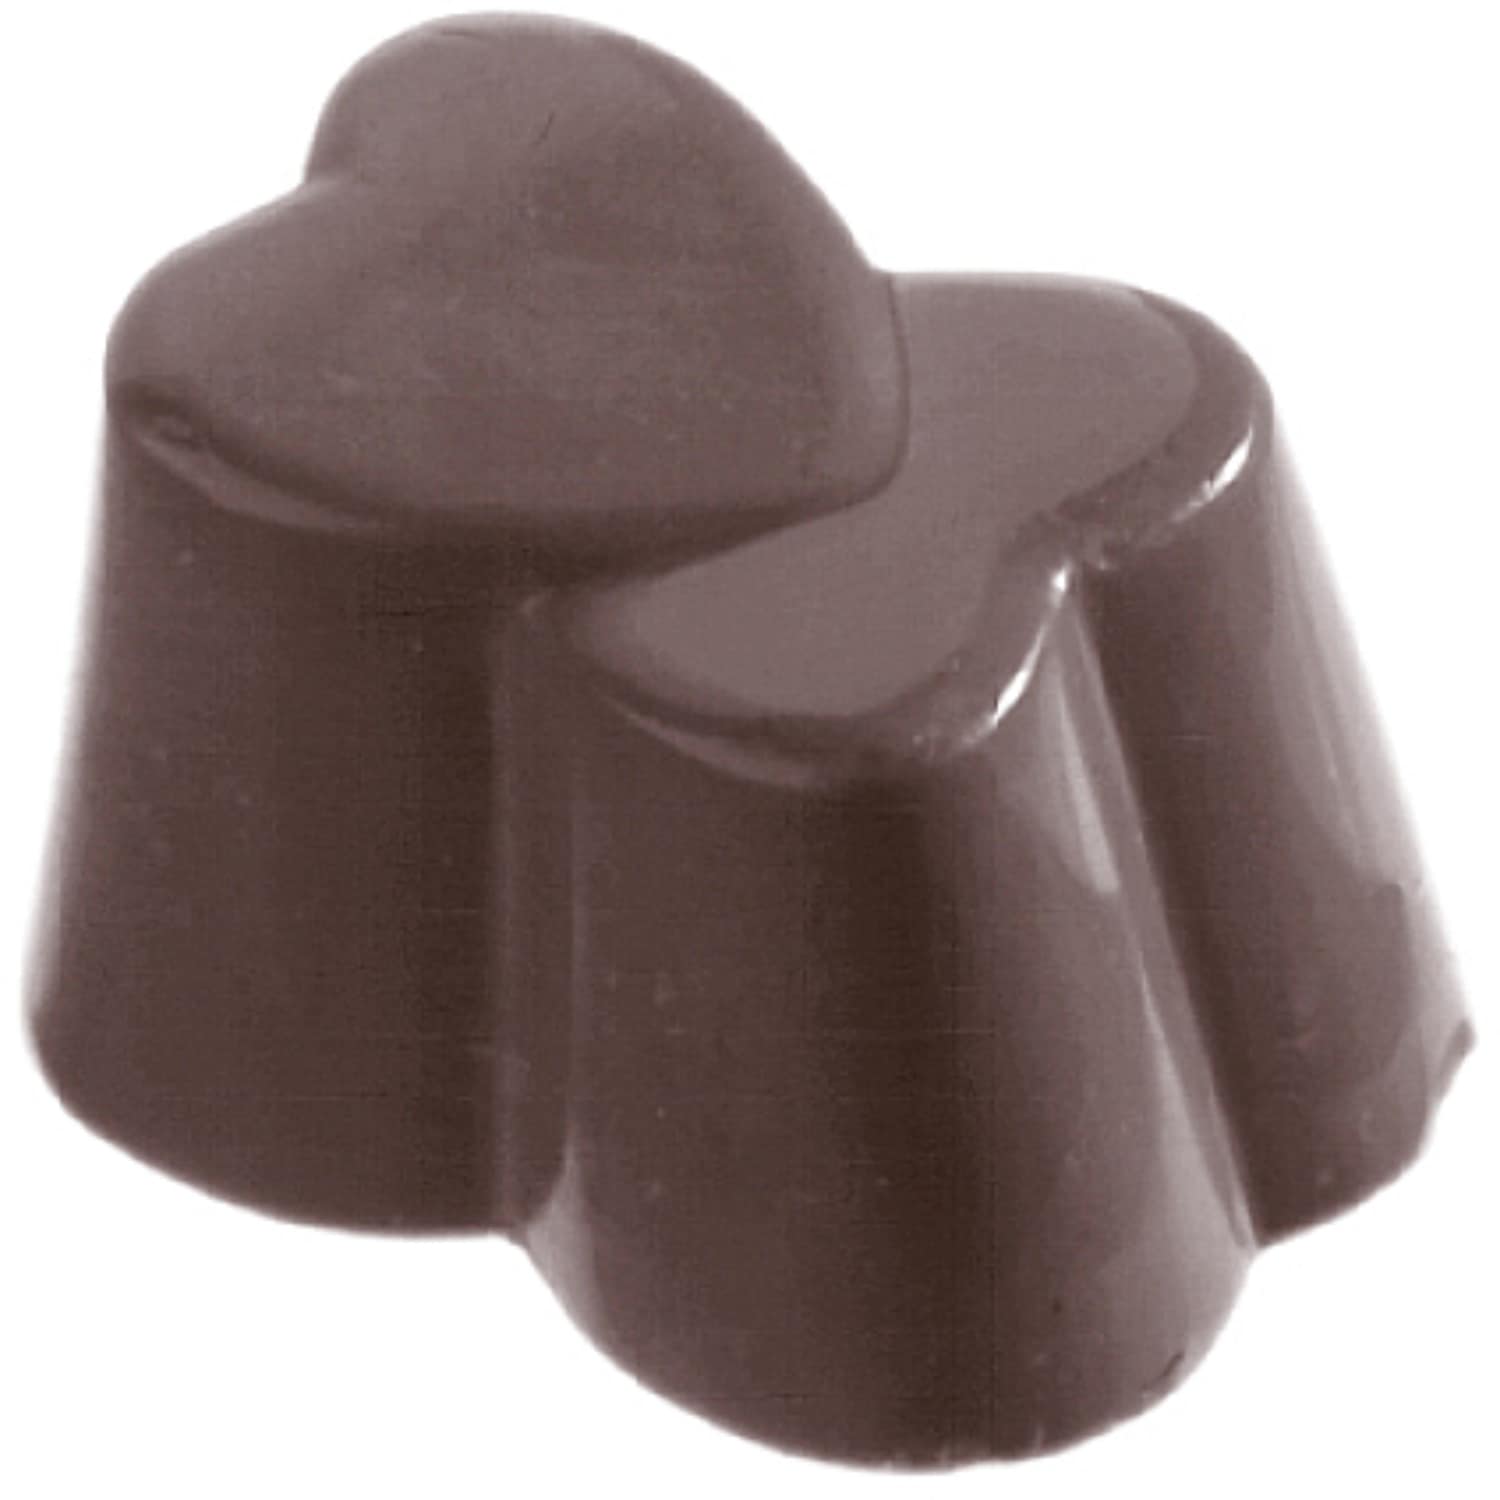 Schokoladenform "Doppelherz" 421023